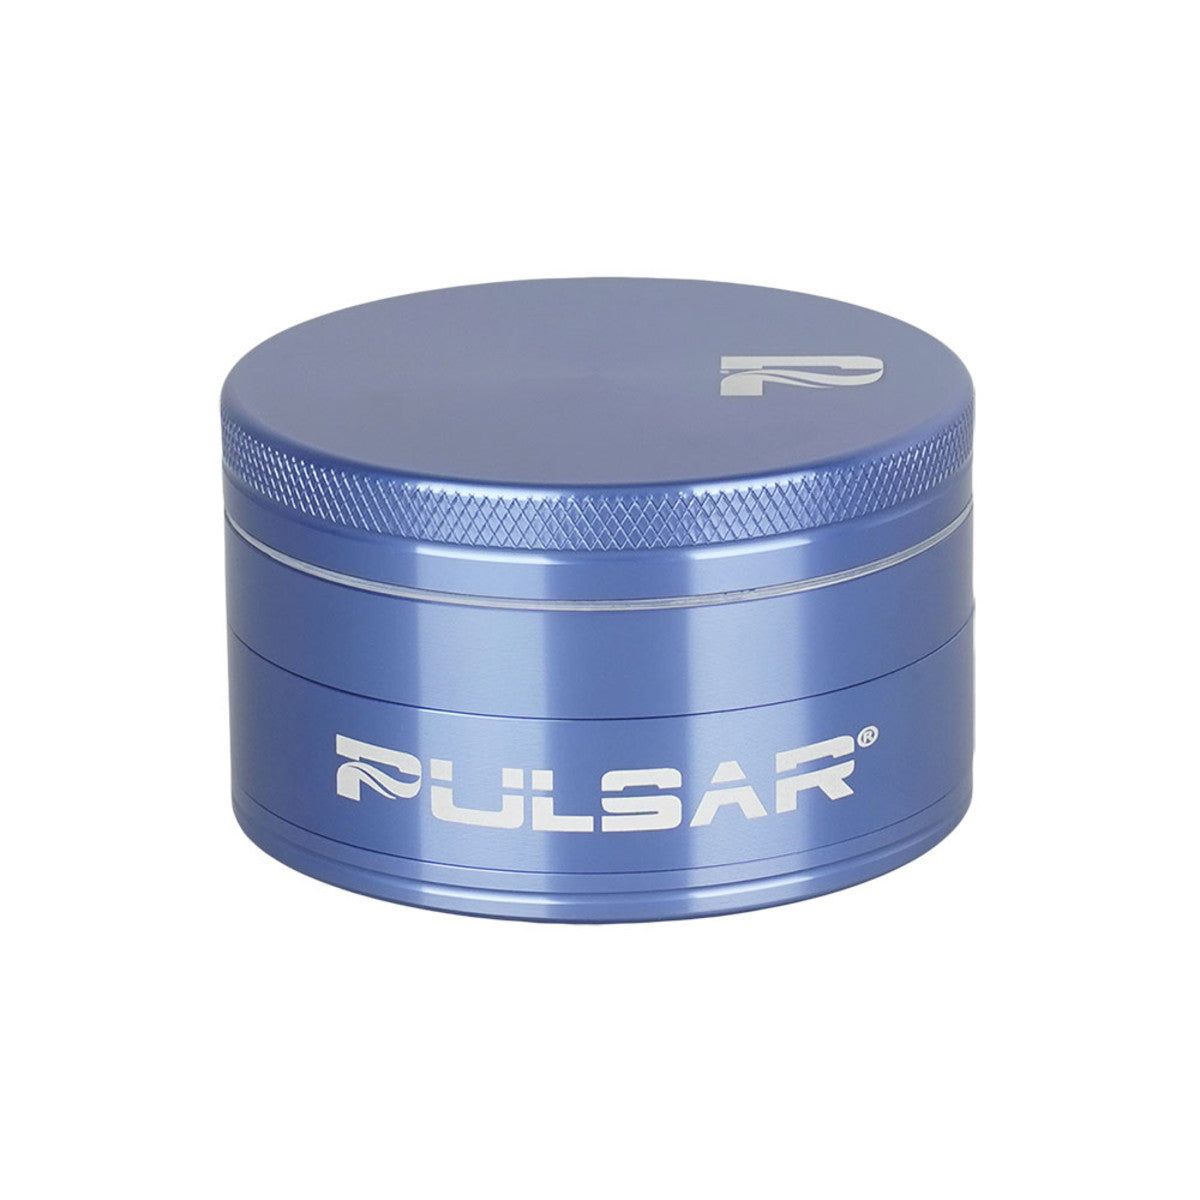 Pulsar Solid Top Aluminum Grinder-GR760- 4pc / 2.5"